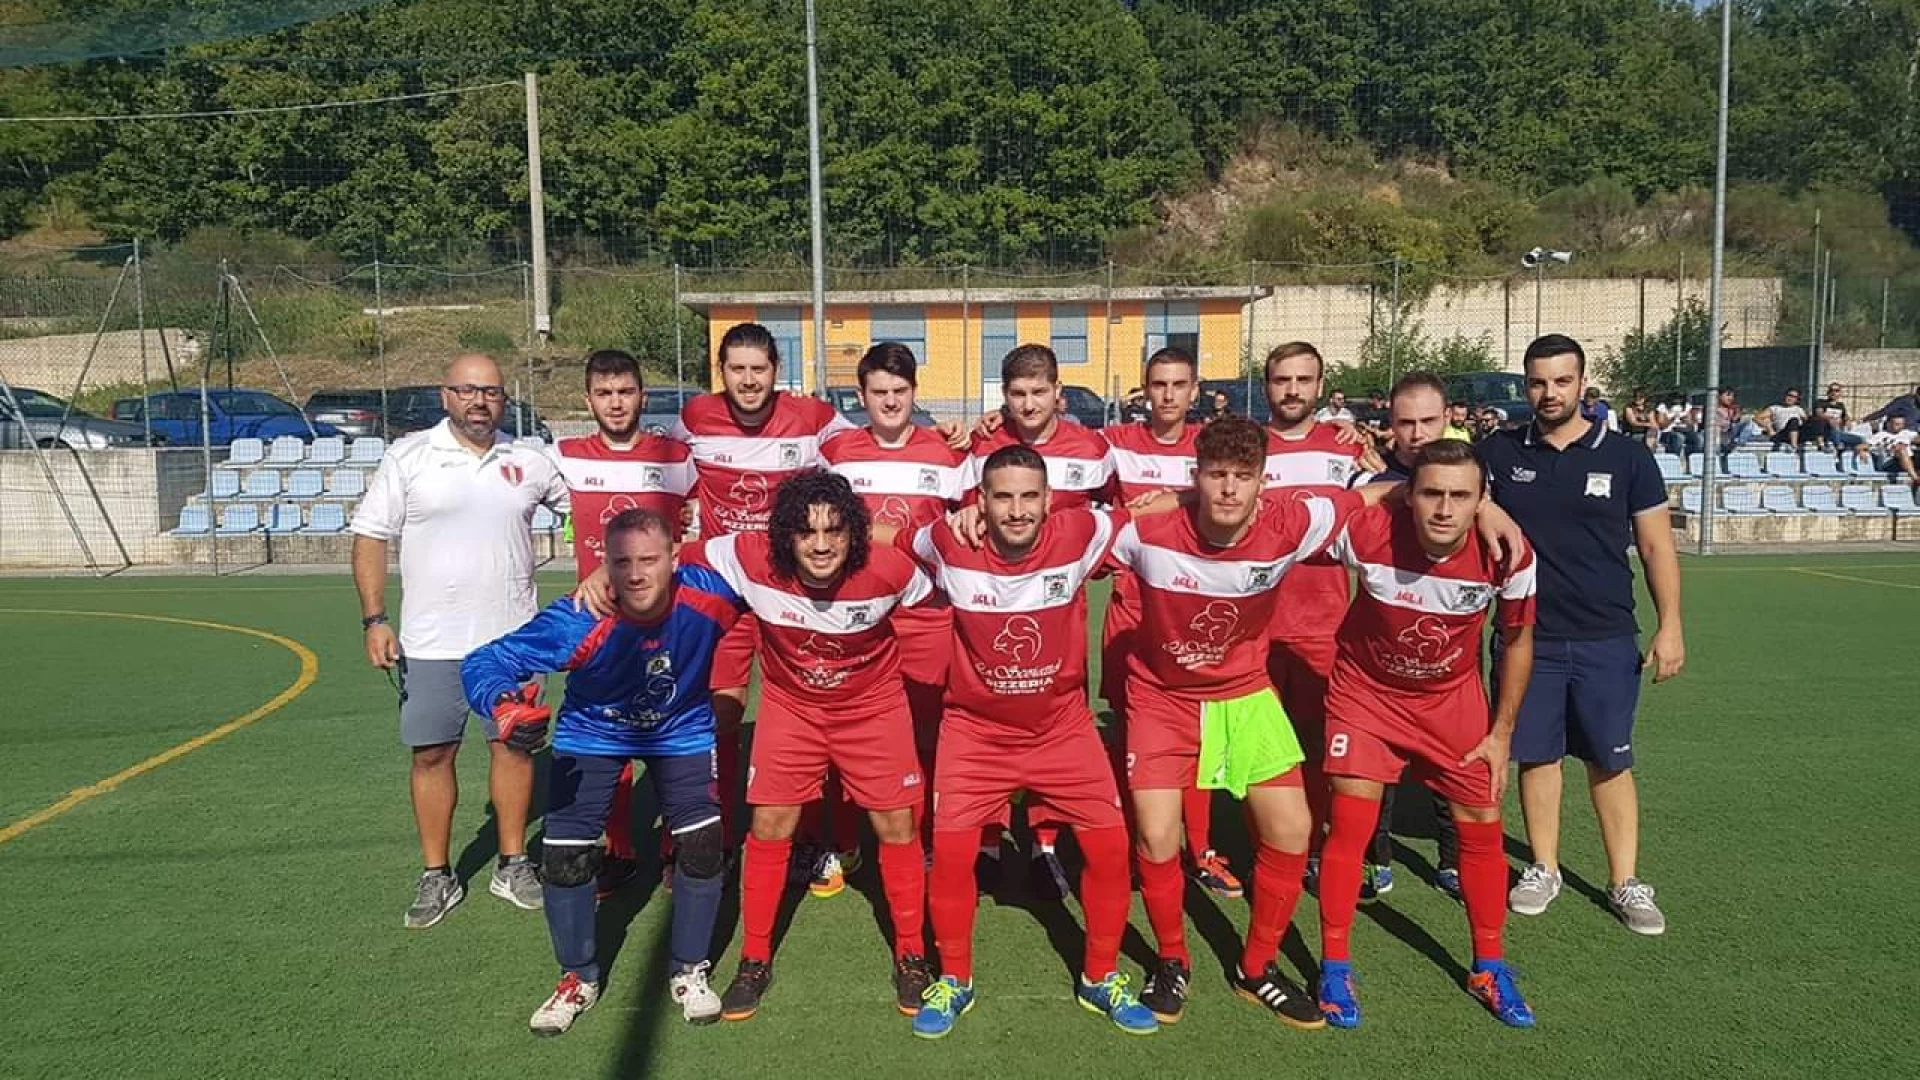 Calcio a 5: vola la Futsal Colli a Volturno. Vittoria esterna a Montagano e primo posto riconquistato.